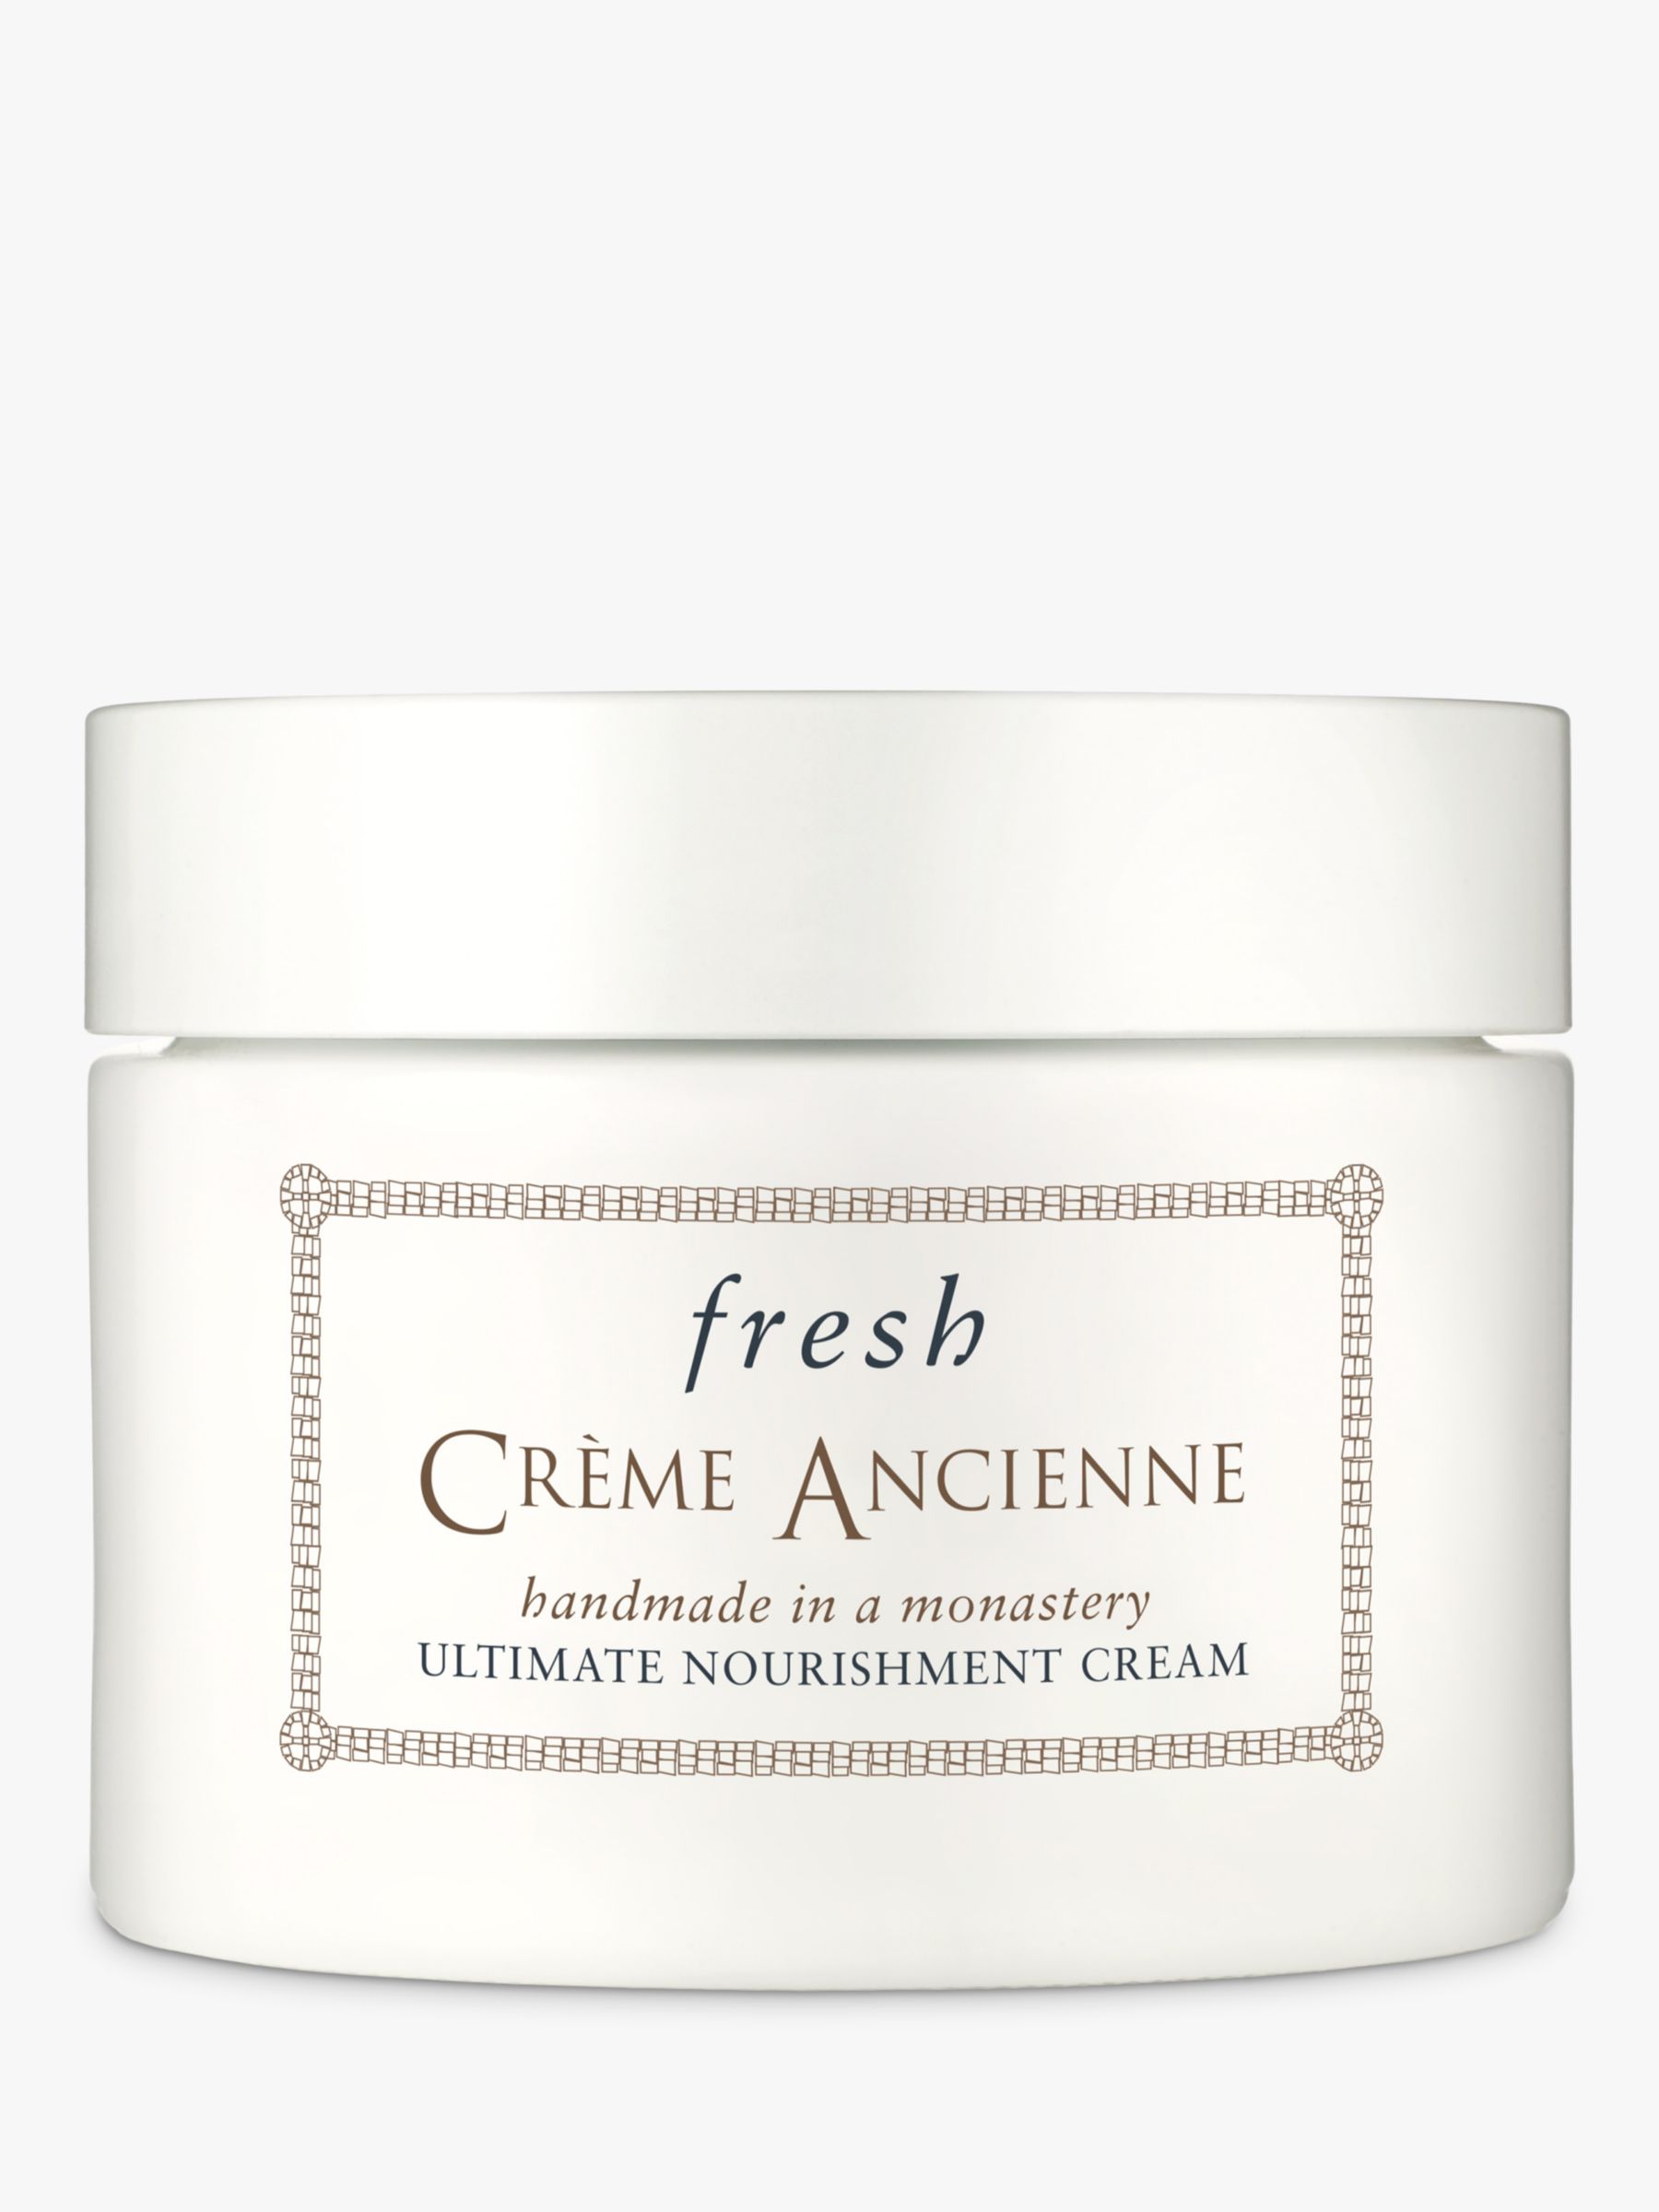 Fresh Crème Ancienne Ultimate Nourishment Cream, 30g 3